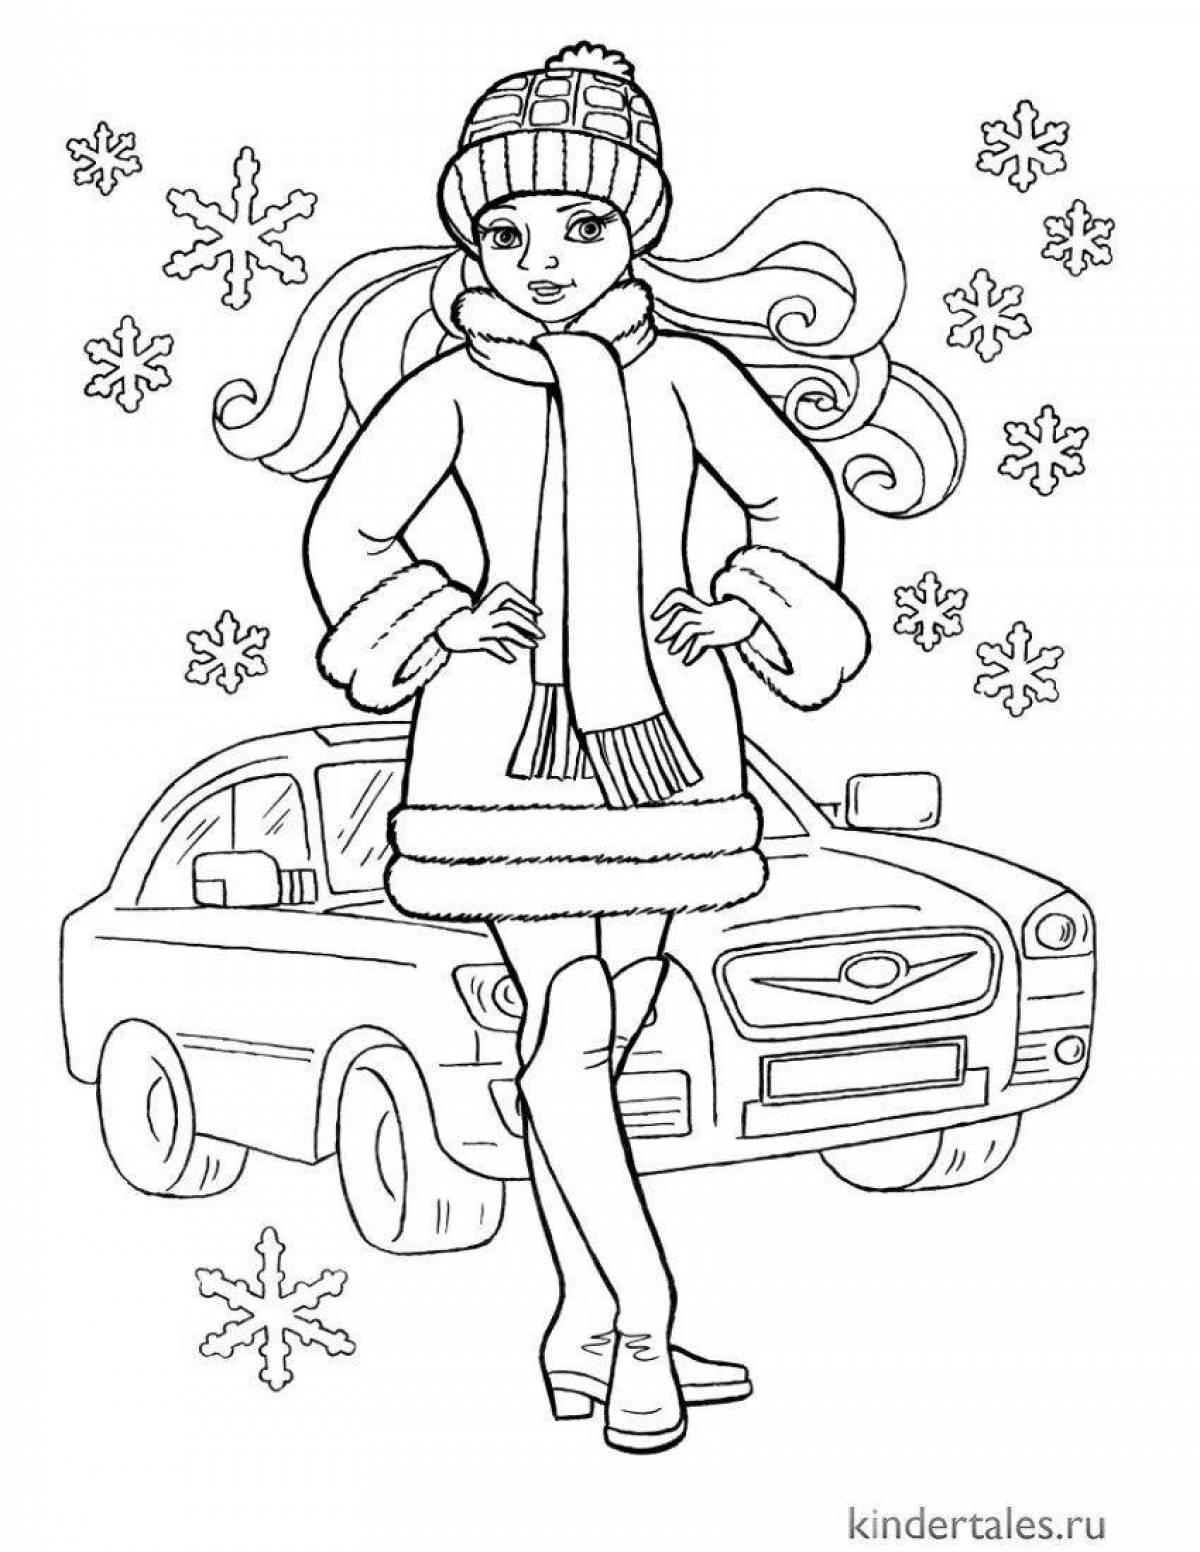 Radiant coloring page doll в зимней одежде